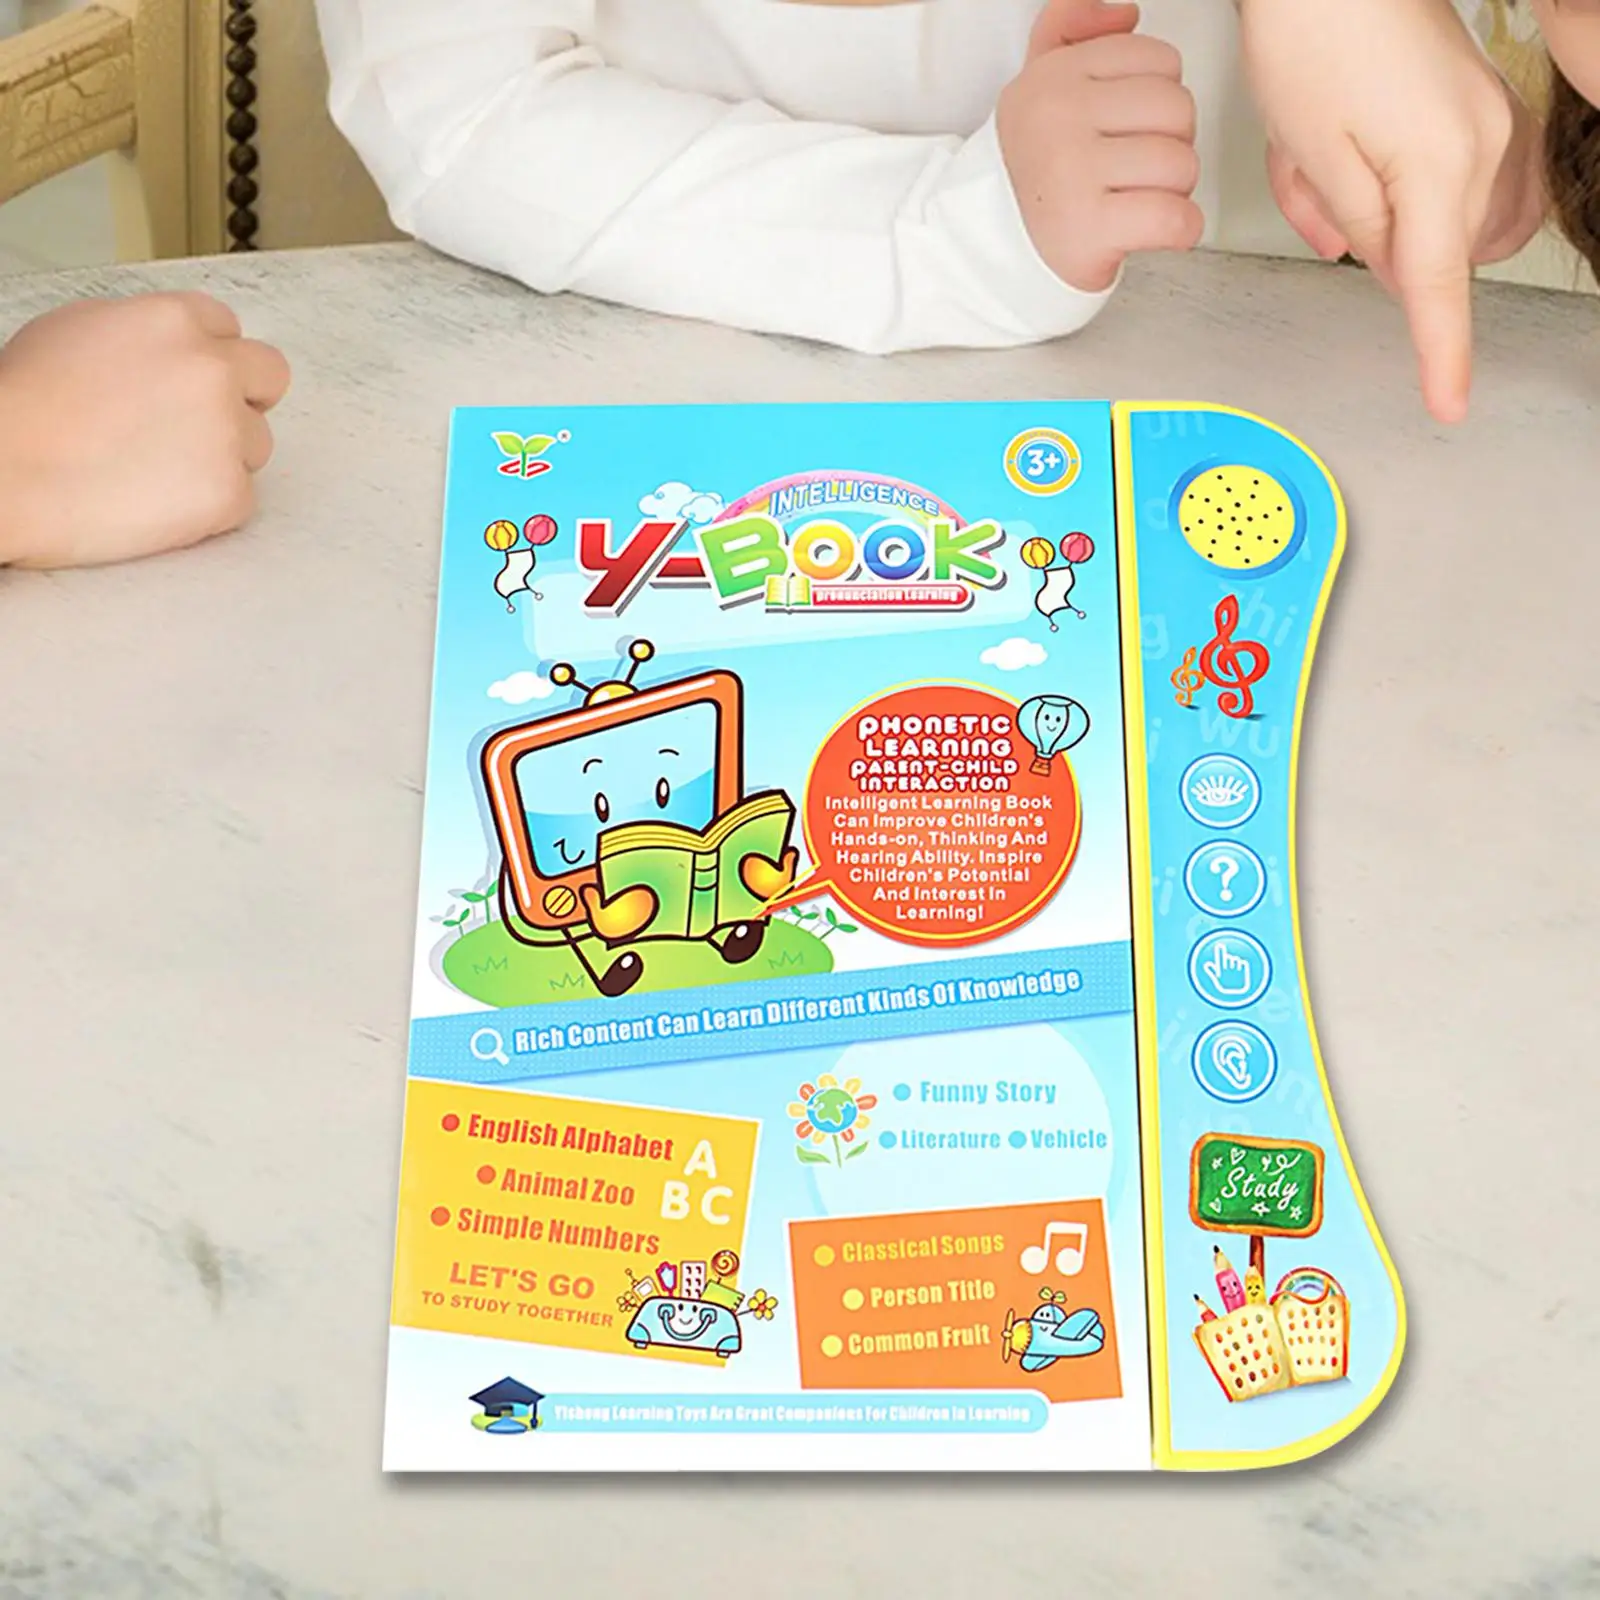 

Говорящая книга на английском языке, подарок, Интерактивная детская звуковая книга для цифр, фруктов, транспортировка языков, символы